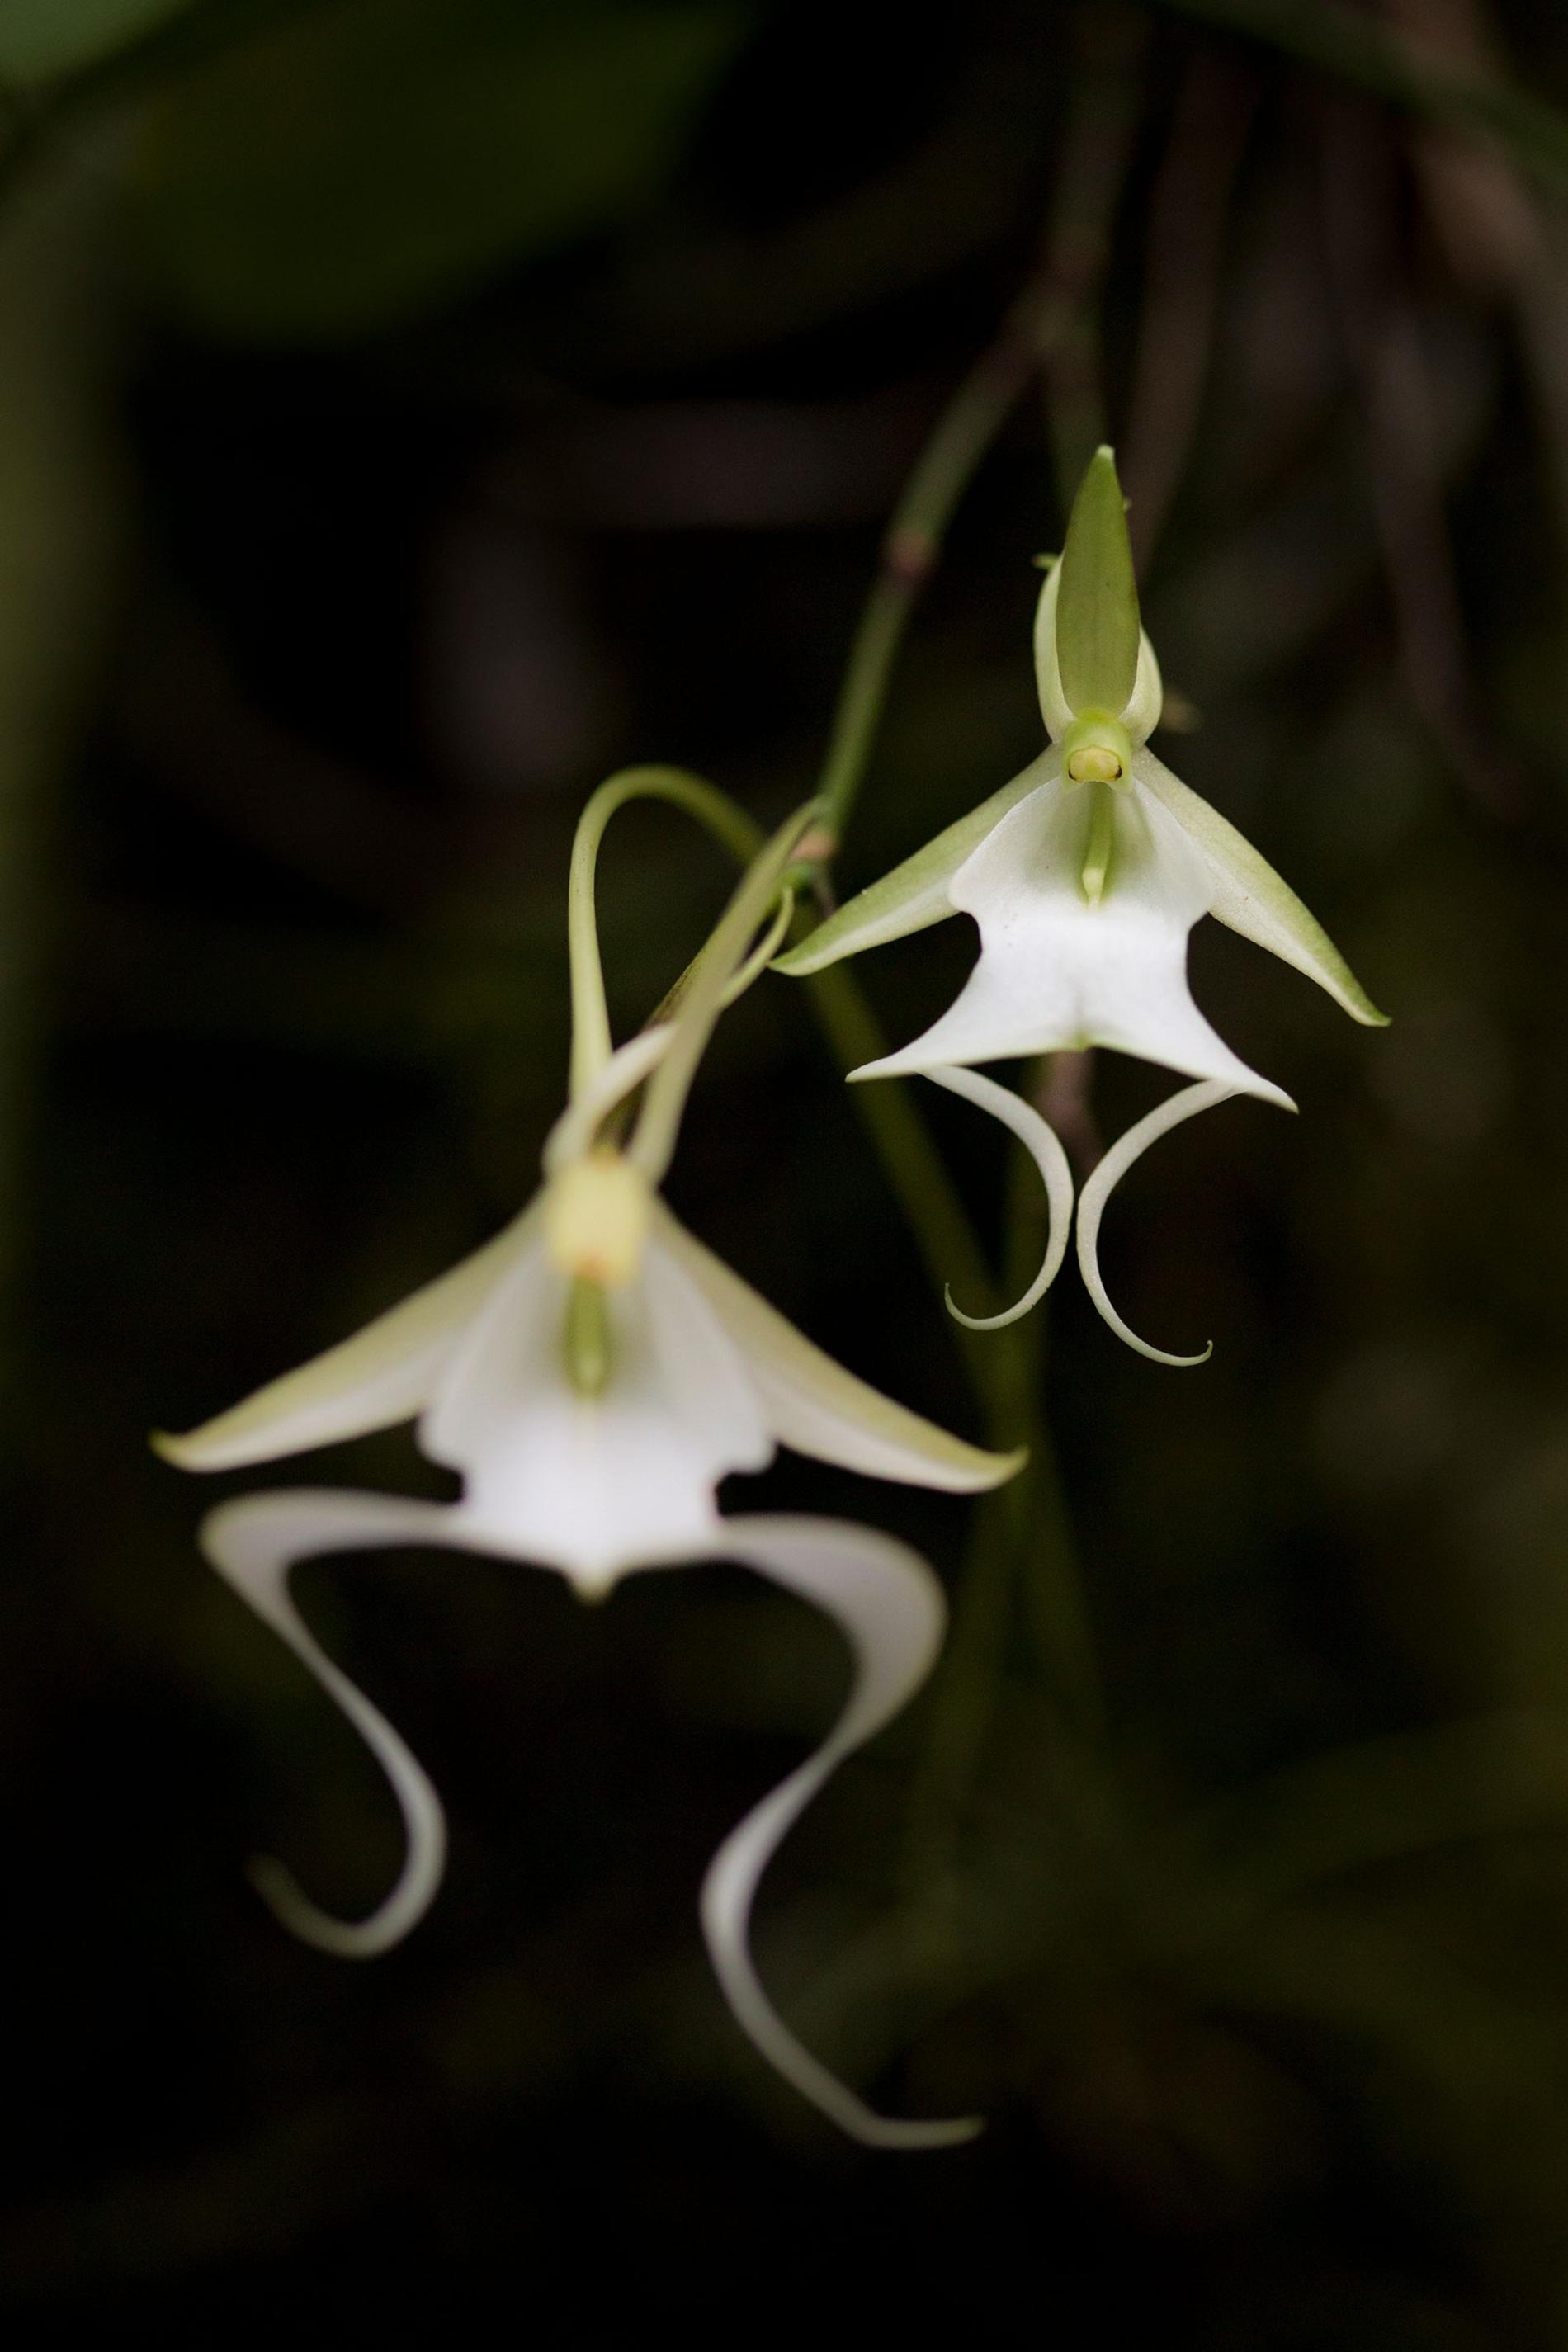 稀有的鬼蘭主要生長在南佛羅里達的三個保護區，它迷人的花朵已讓世界各地的人陶醉。PHOTOGRAPH BY MAC STONE